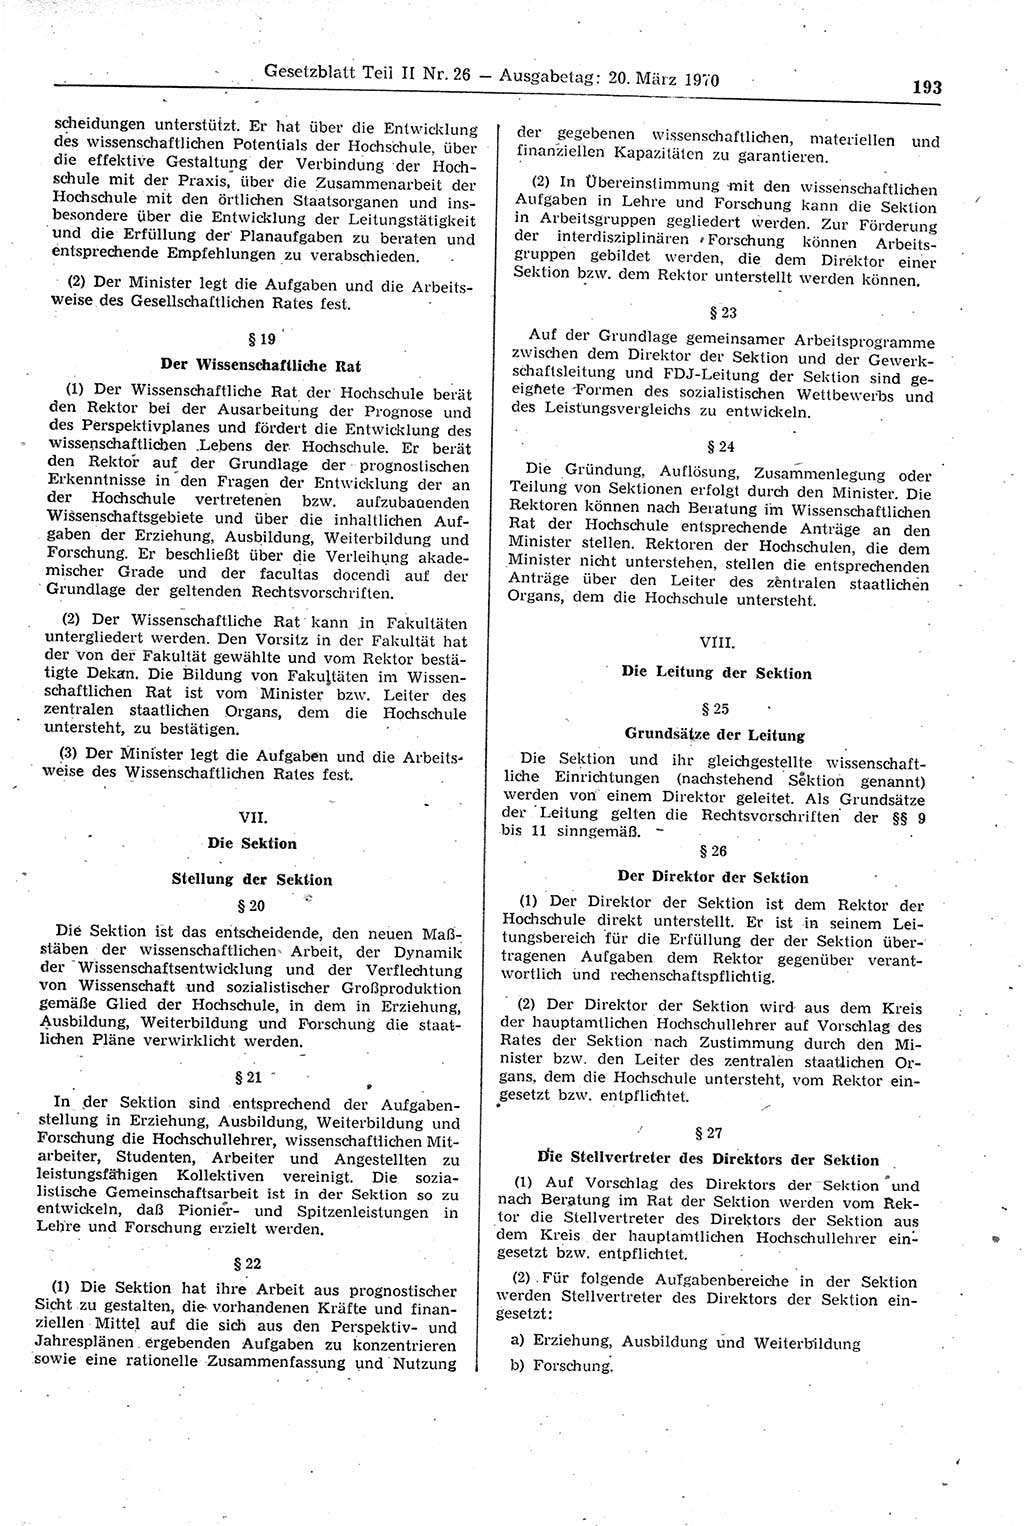 Gesetzblatt (GBl.) der Deutschen Demokratischen Republik (DDR) Teil ⅠⅠ 1970, Seite 193 (GBl. DDR ⅠⅠ 1970, S. 193)